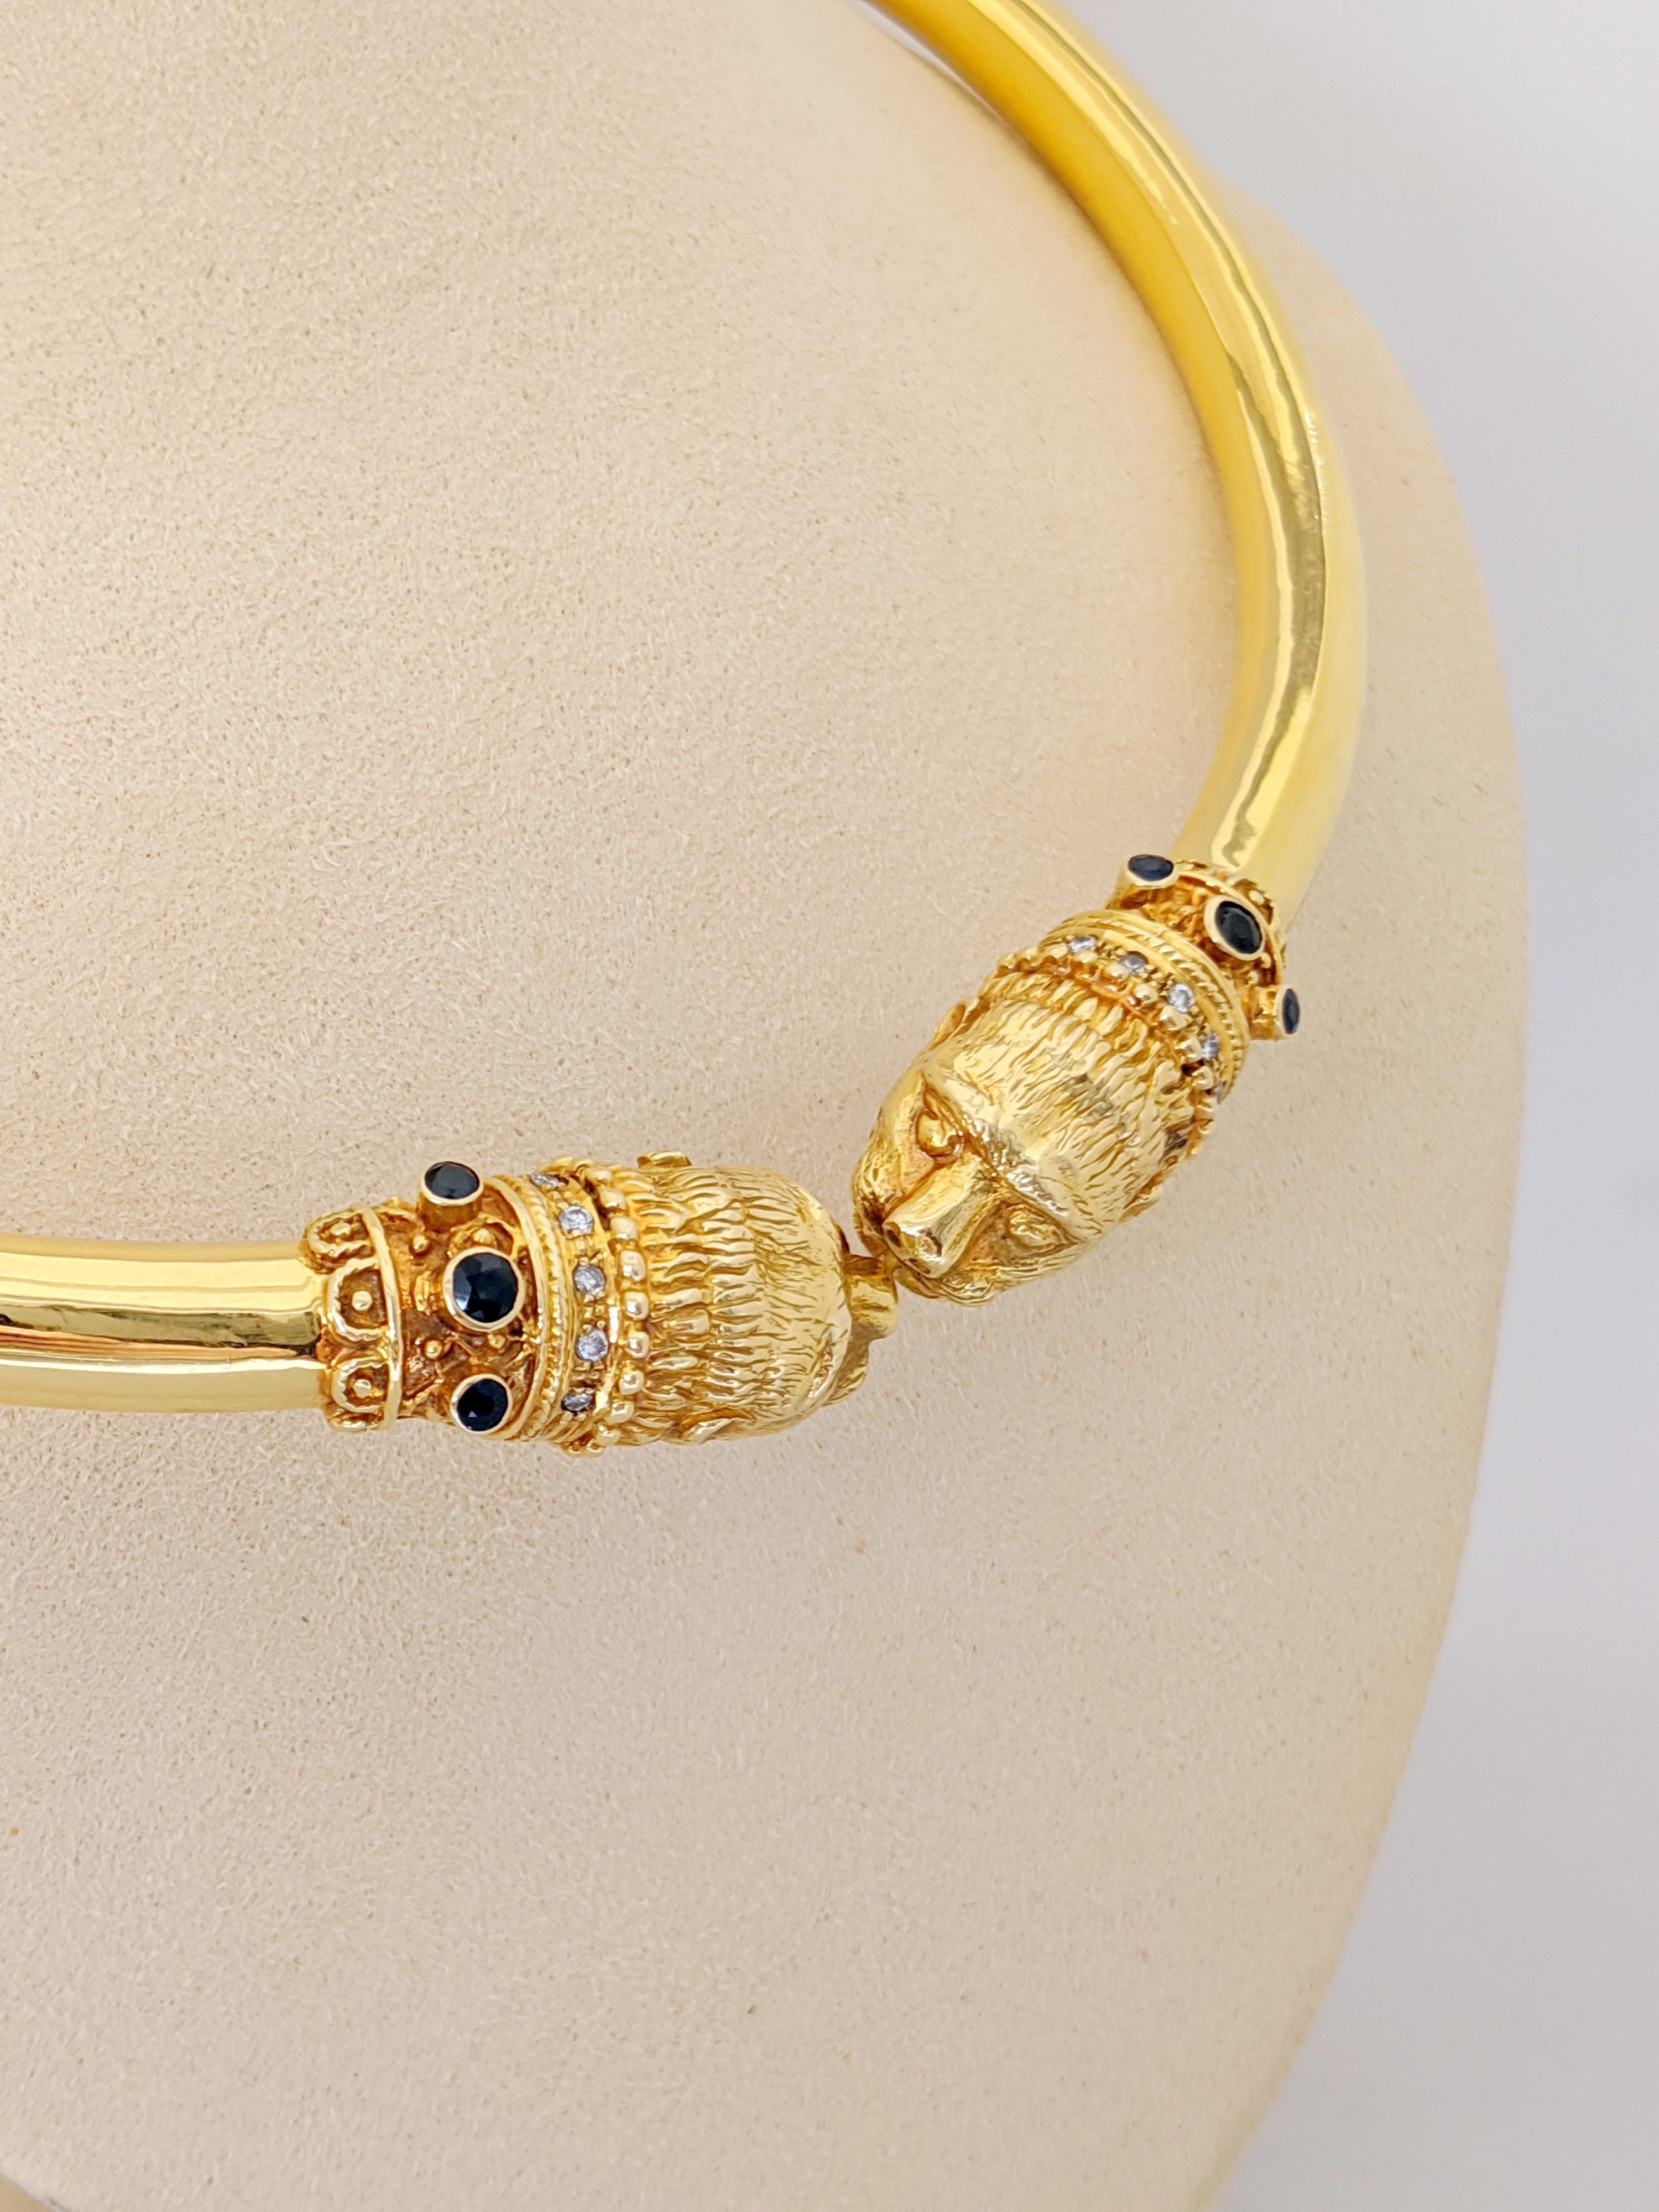 Dieses Halsband aus 18 Karat Gelbgold wurde von Zolotas aus Athen, Griechenland, entworfen. Das 1895 gegründete Unternehmen verbindet griechisches Erbe mit modernem Stil, um diese zeitlosen Stücke zu kreieren. Begehrt bei Royals und